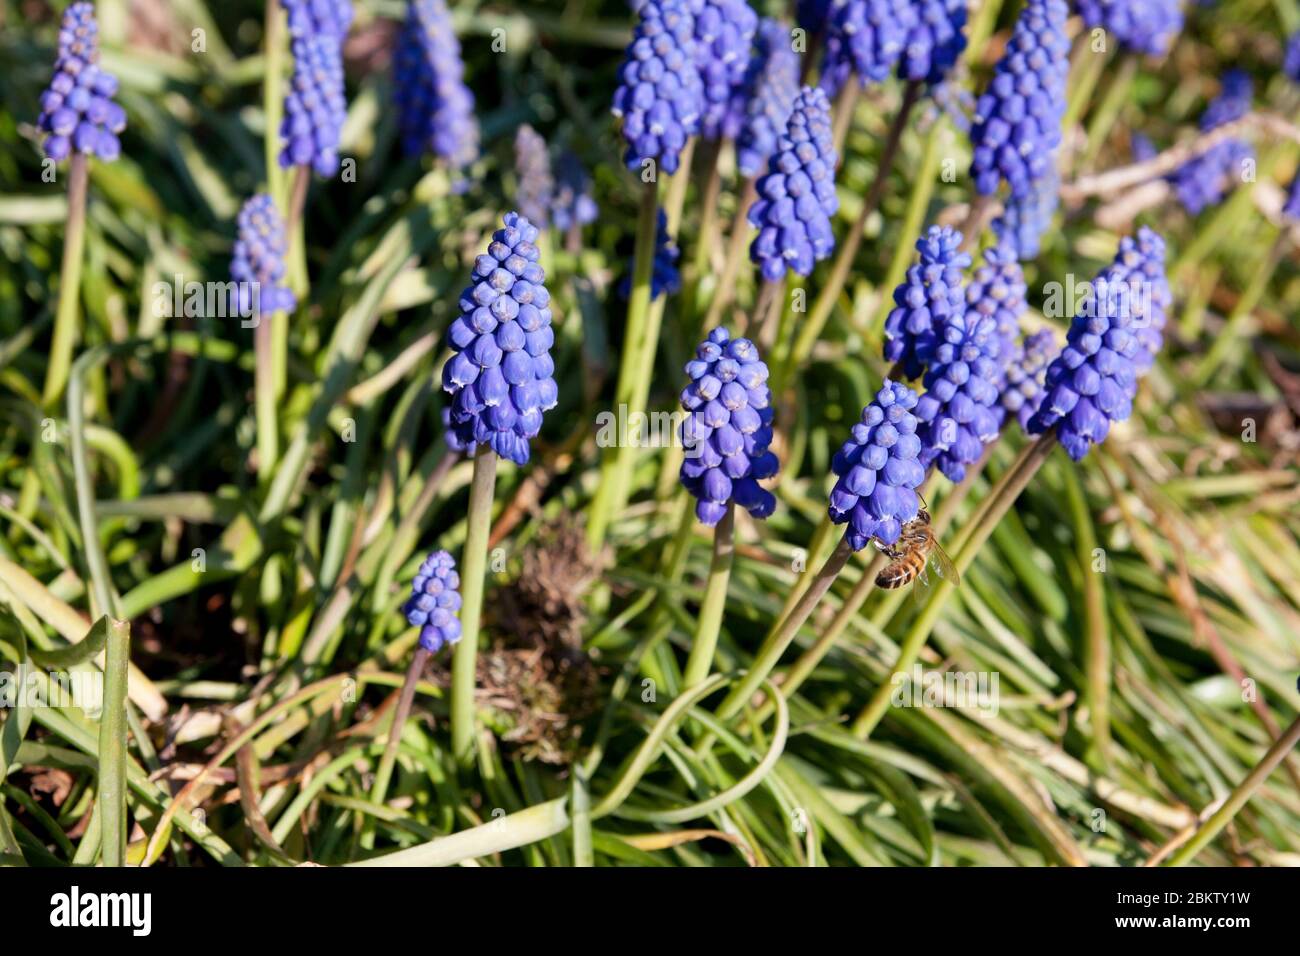 Uva armena giacinto Muscari armeniacum fioritura in giardino primaverile. Piante bulbose in fiore con bellissimi fiori blu. Utilizzabile come wal Foto Stock